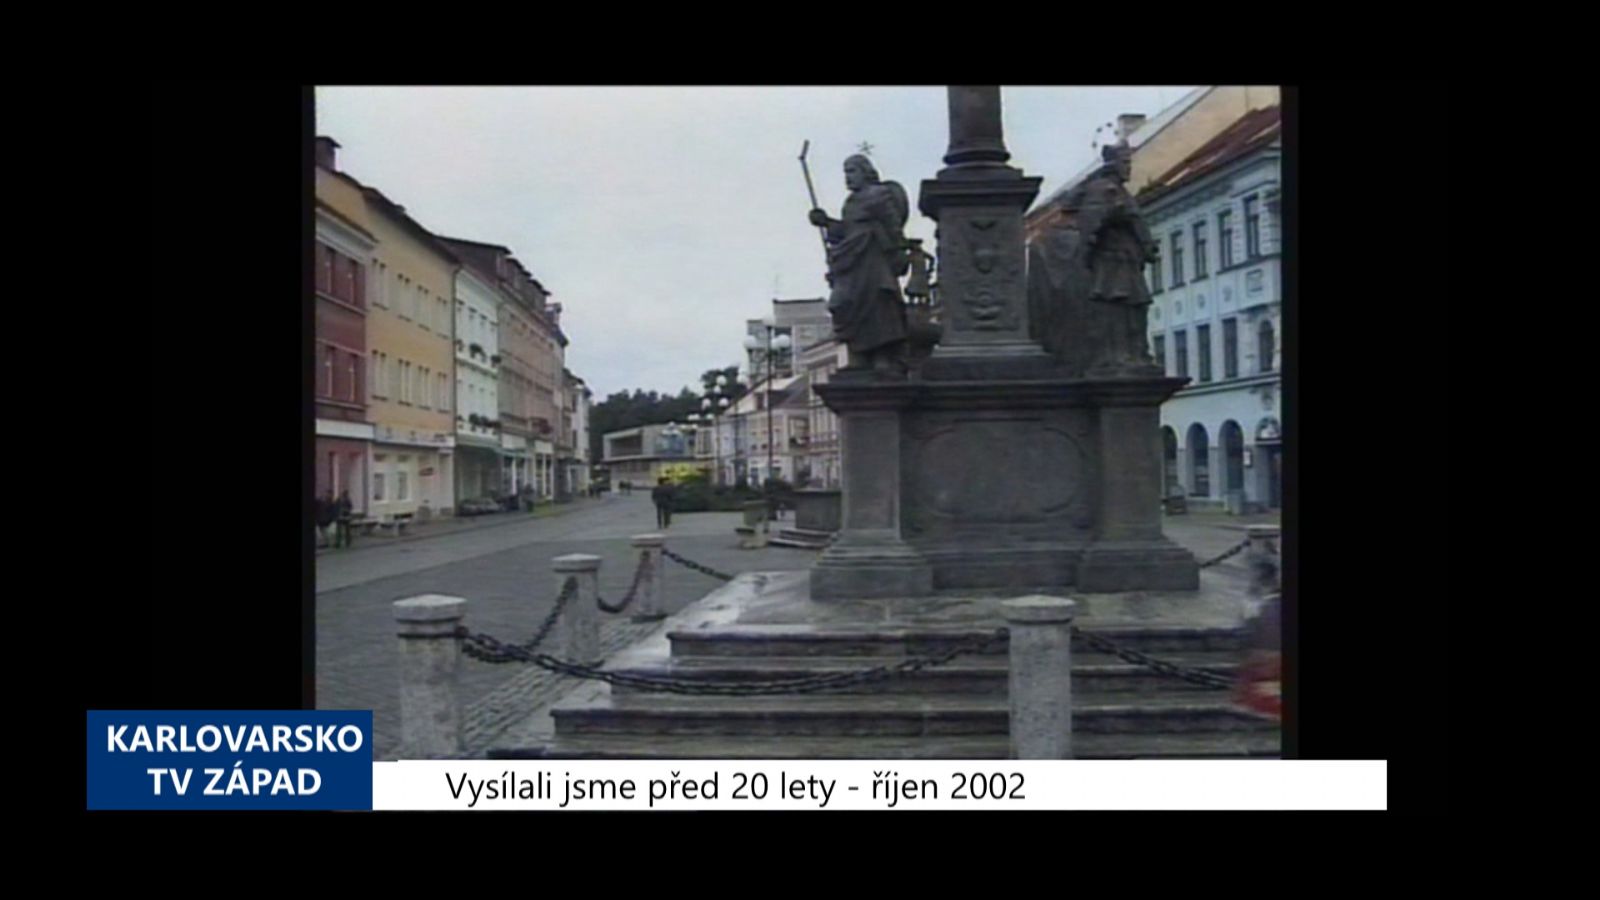 2002 – Sokolov: Bude u morového sloupu nový plot? (TV Západ)